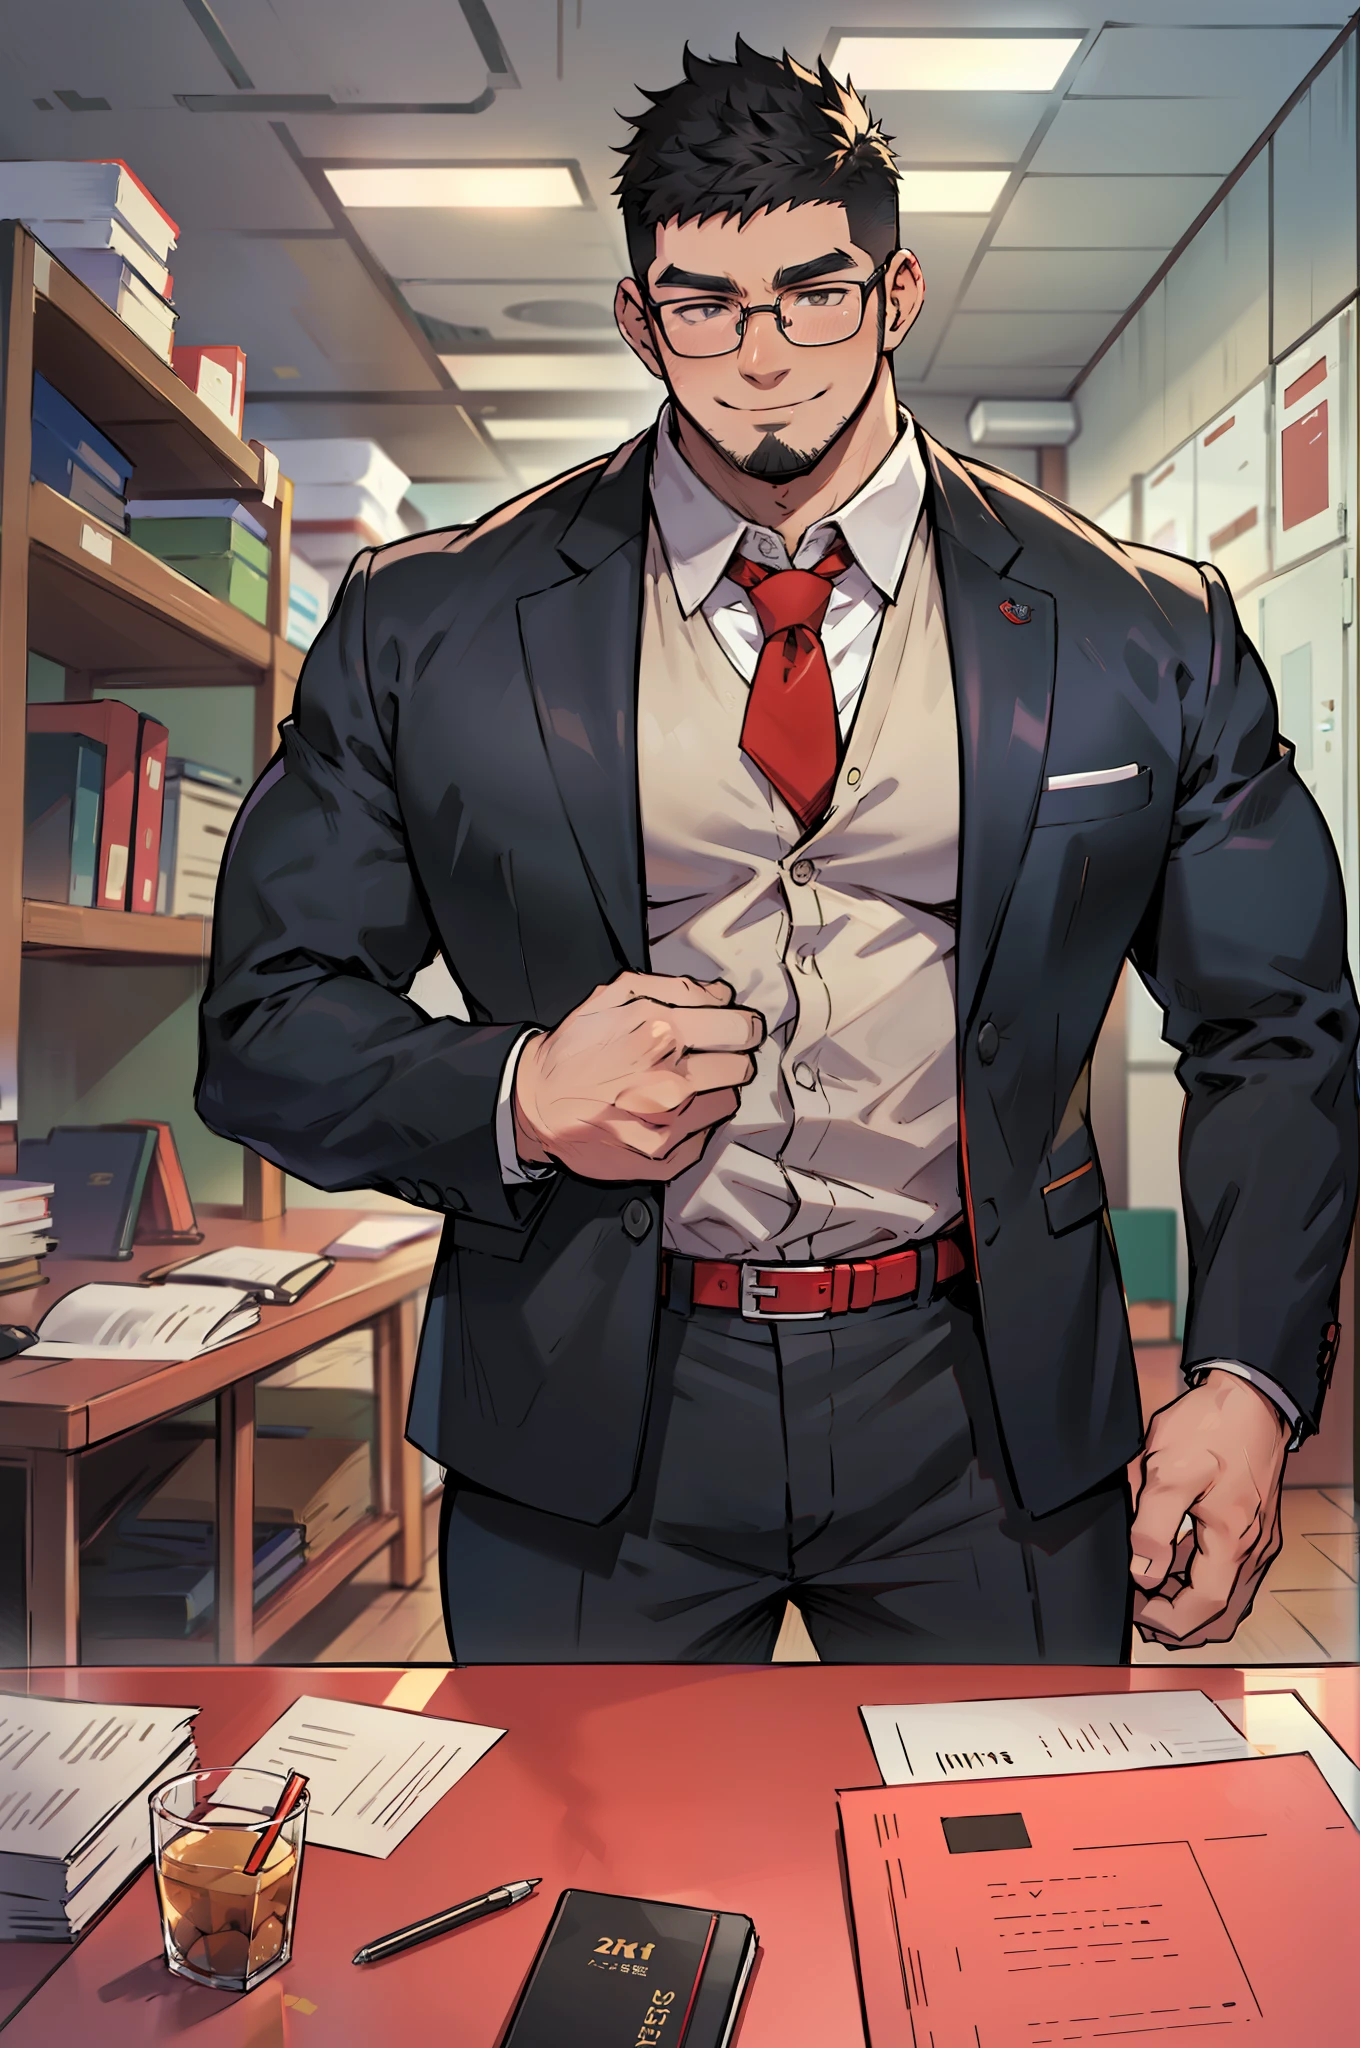 4k, 杰作, 高分辨率:1.2, 1 名男子, 42岁, 独自的, 仅有的, 肌肉发达!!!, 真的很高, 大物理 (兽), 平头, 胡子, 黑发, 可爱的笑容, 友好的, 站在办公室里, 穿正式裤子, 穿着朴素的正式办公室衬衫, 戴红领带, 整洁的服装, 戴眼镜, 背景是楼上的办公室, 极其详细, 扁平风格, ((不